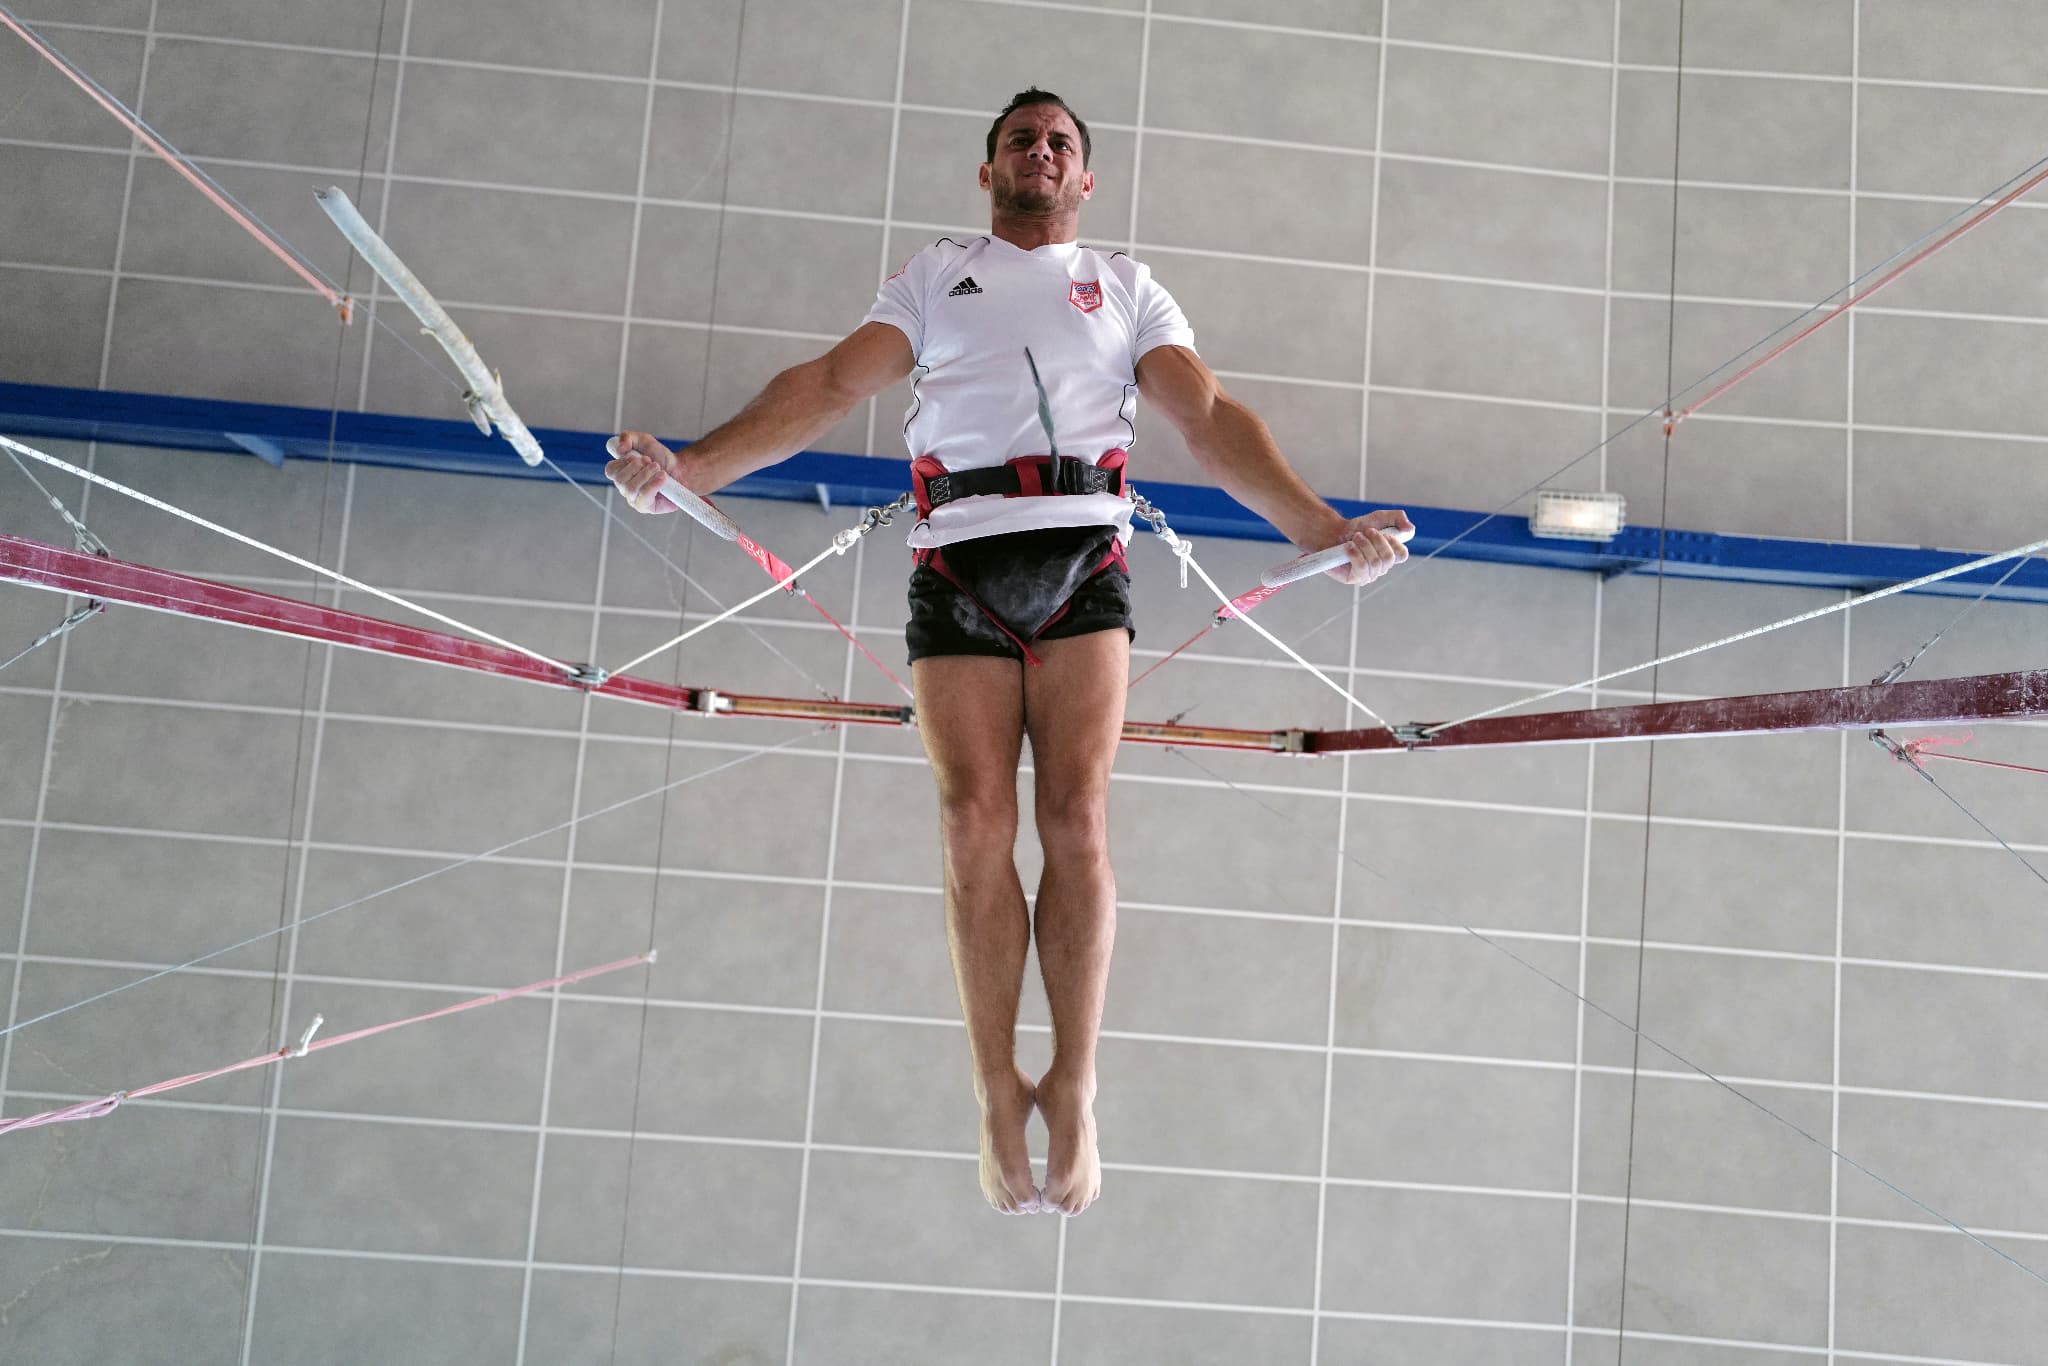 Gymnastique JO. Grosse déception pour le porte-drapeau Samir Aït